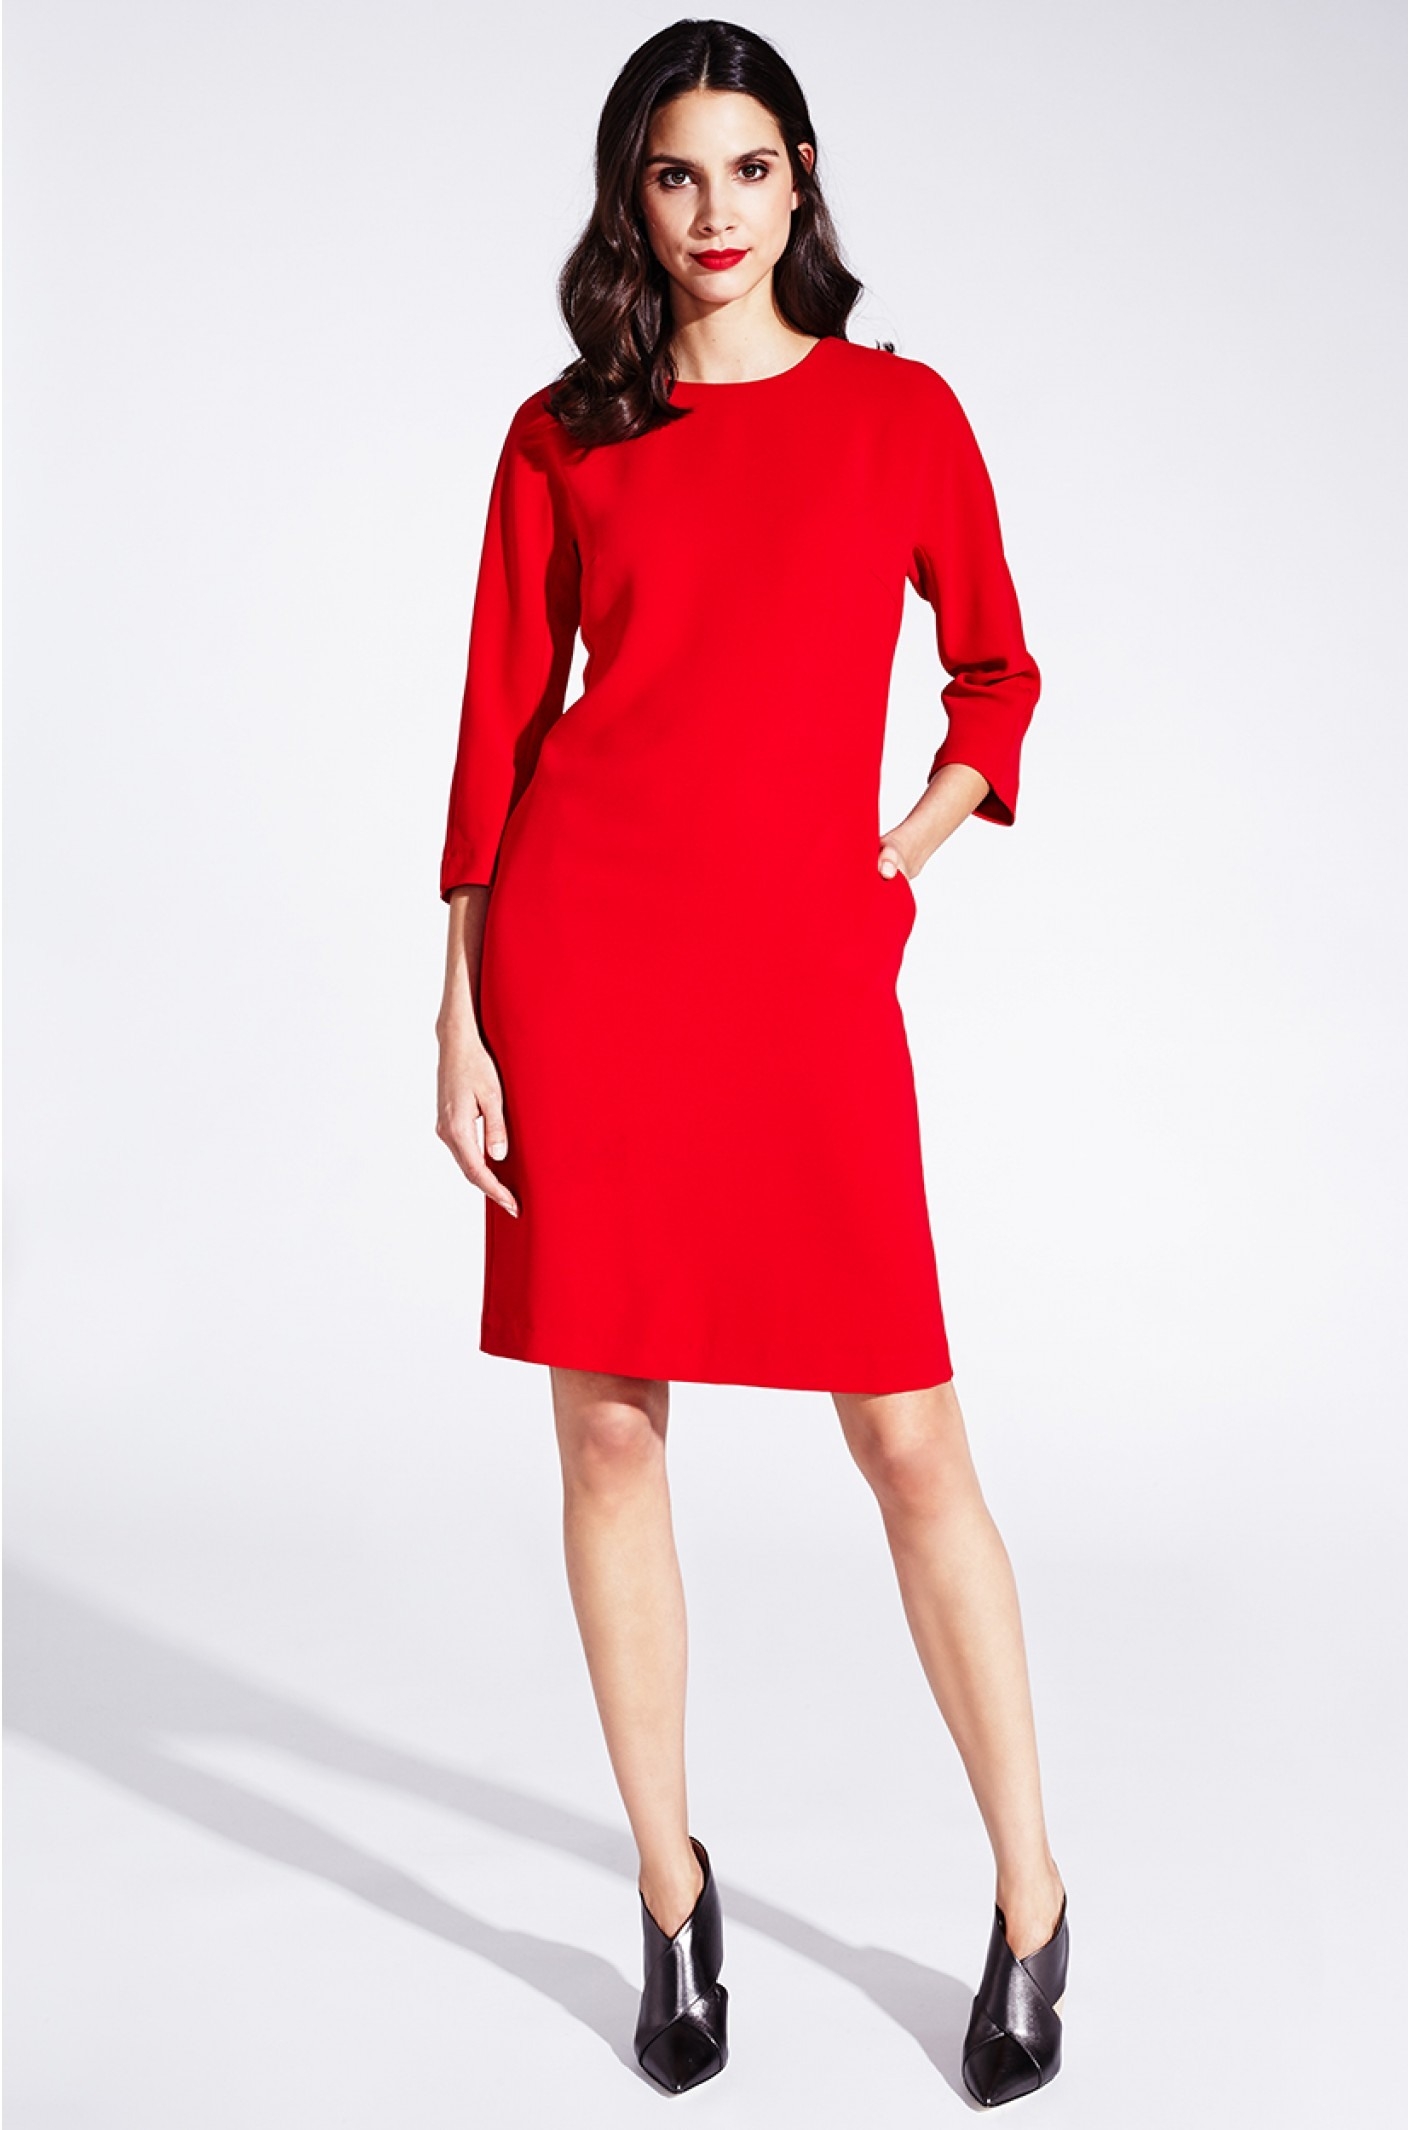 20 Ausgezeichnet Rotes Kleid Knielang Vertrieb Einzigartig Rotes Kleid Knielang Ärmel